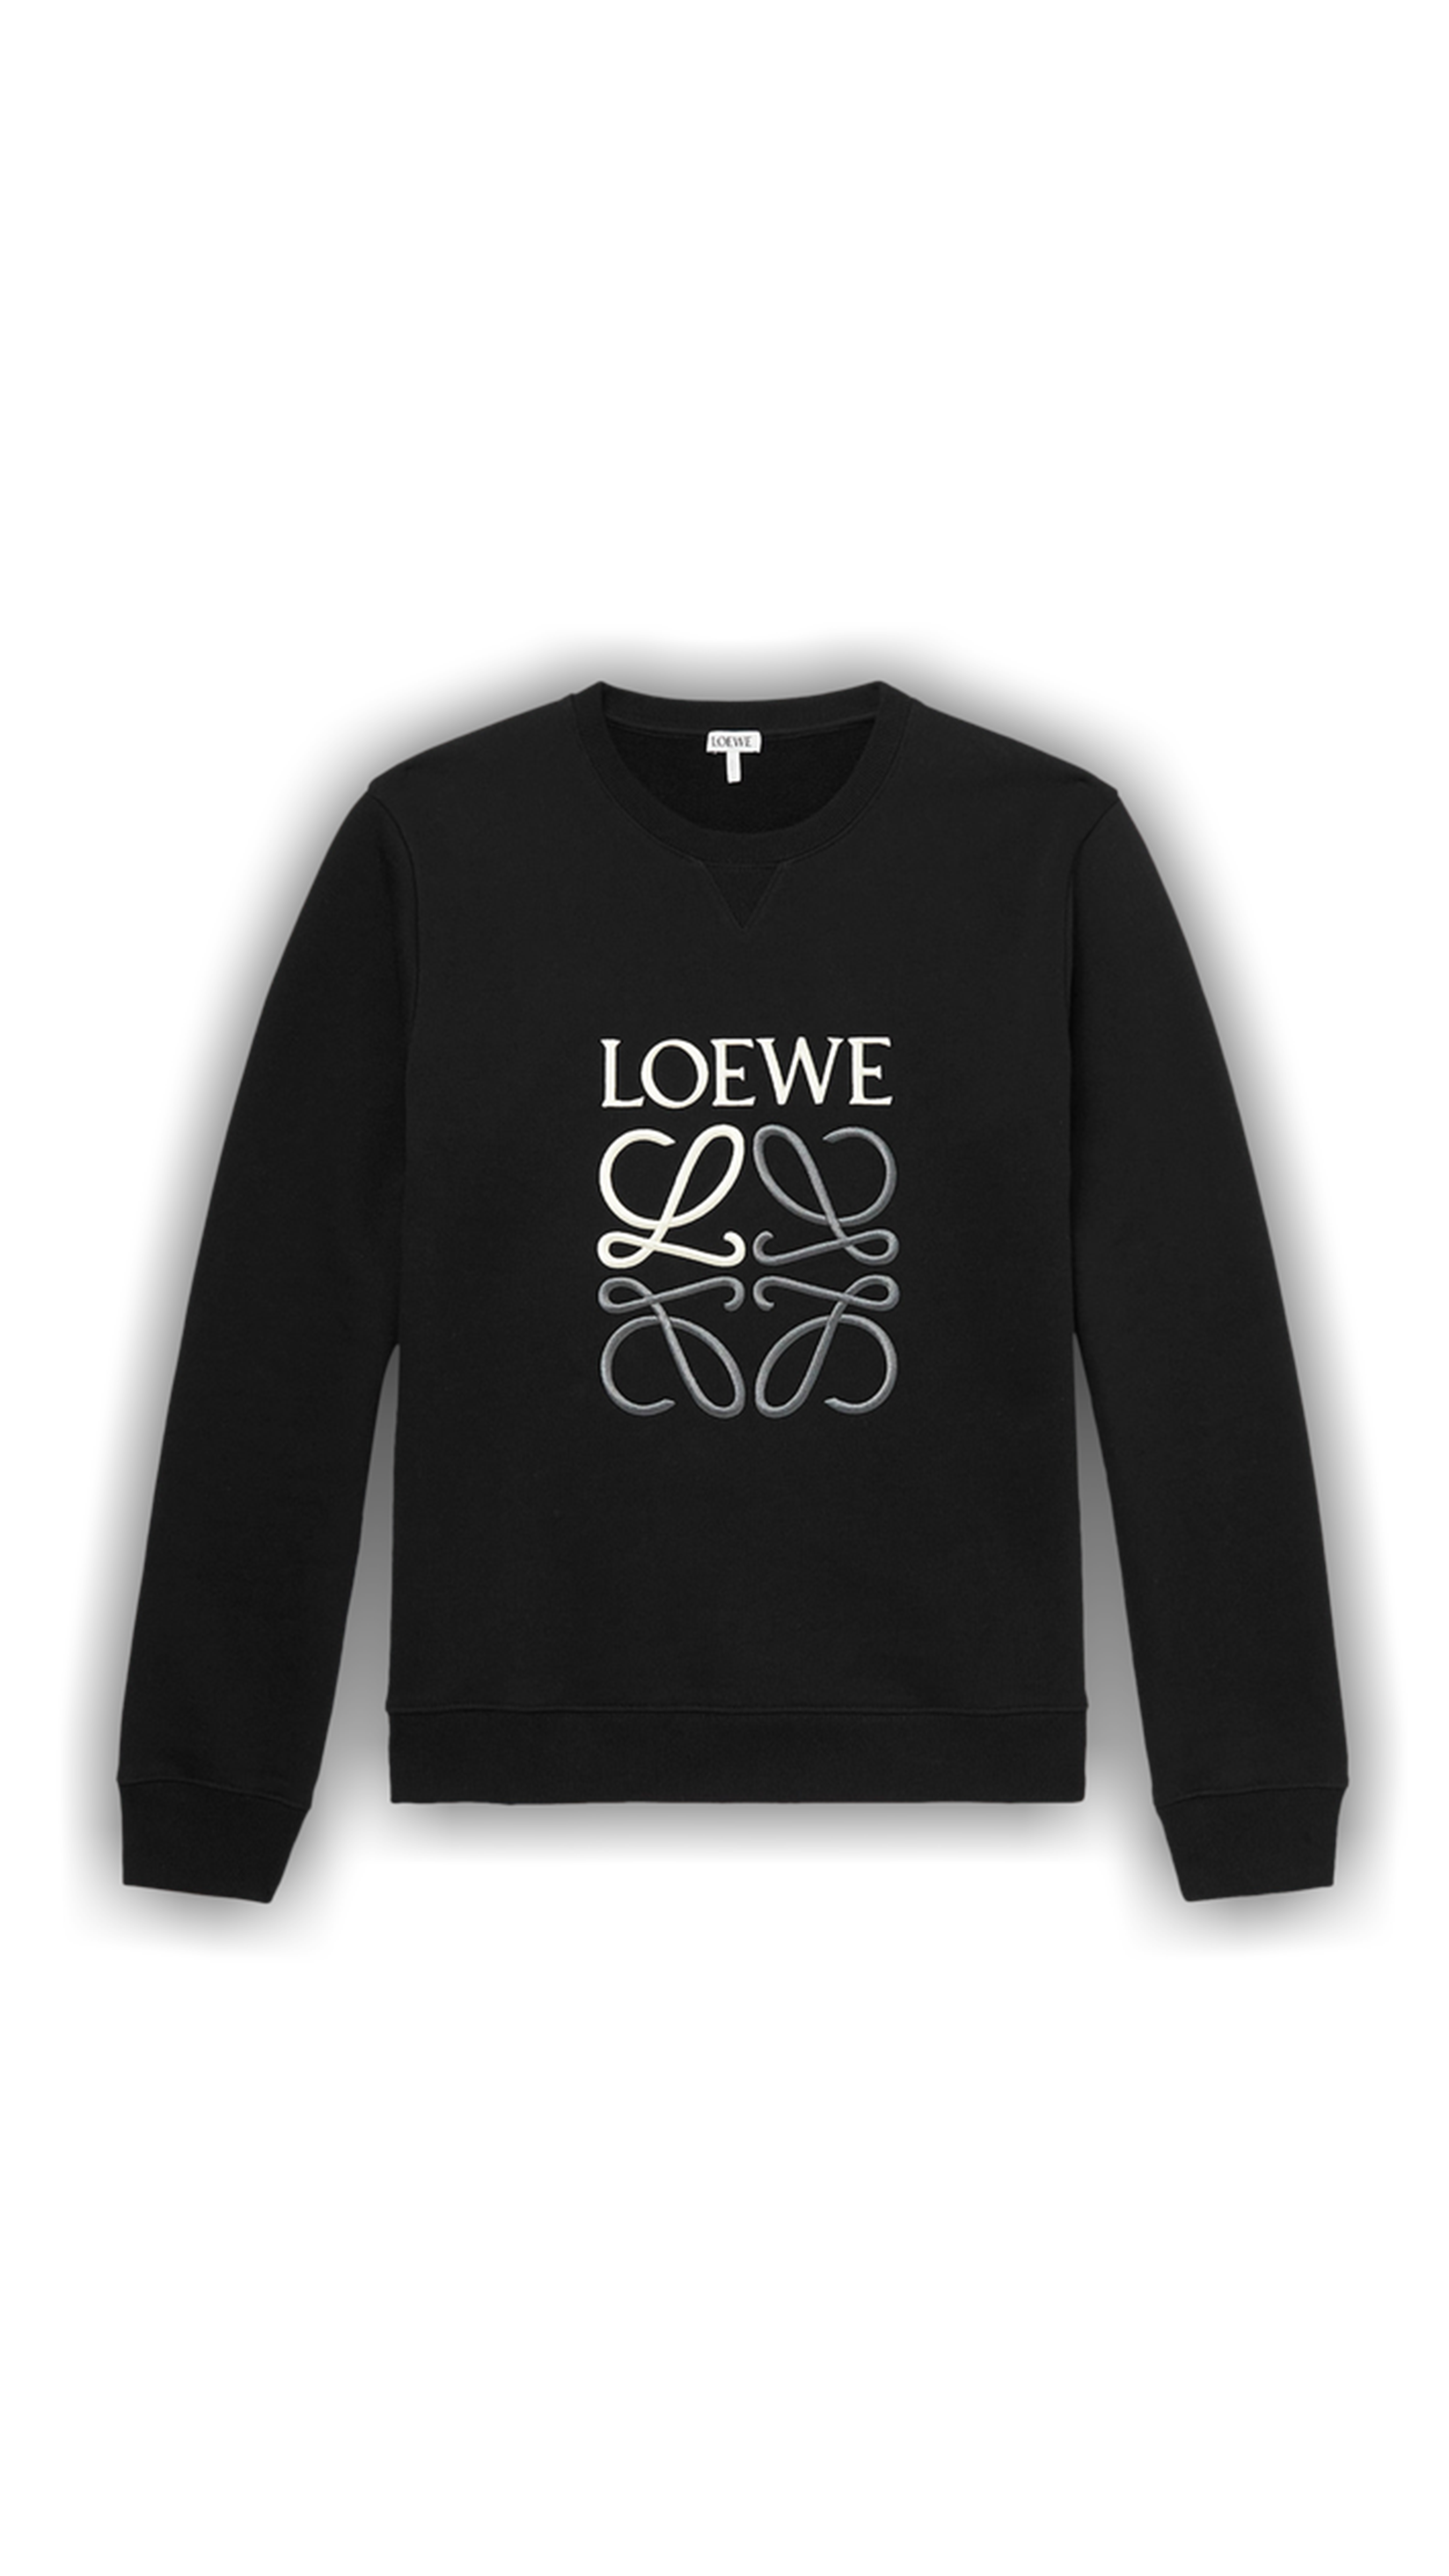 Anagram Regular Fit Sweatshirt in Cotton - Black/Grey/White